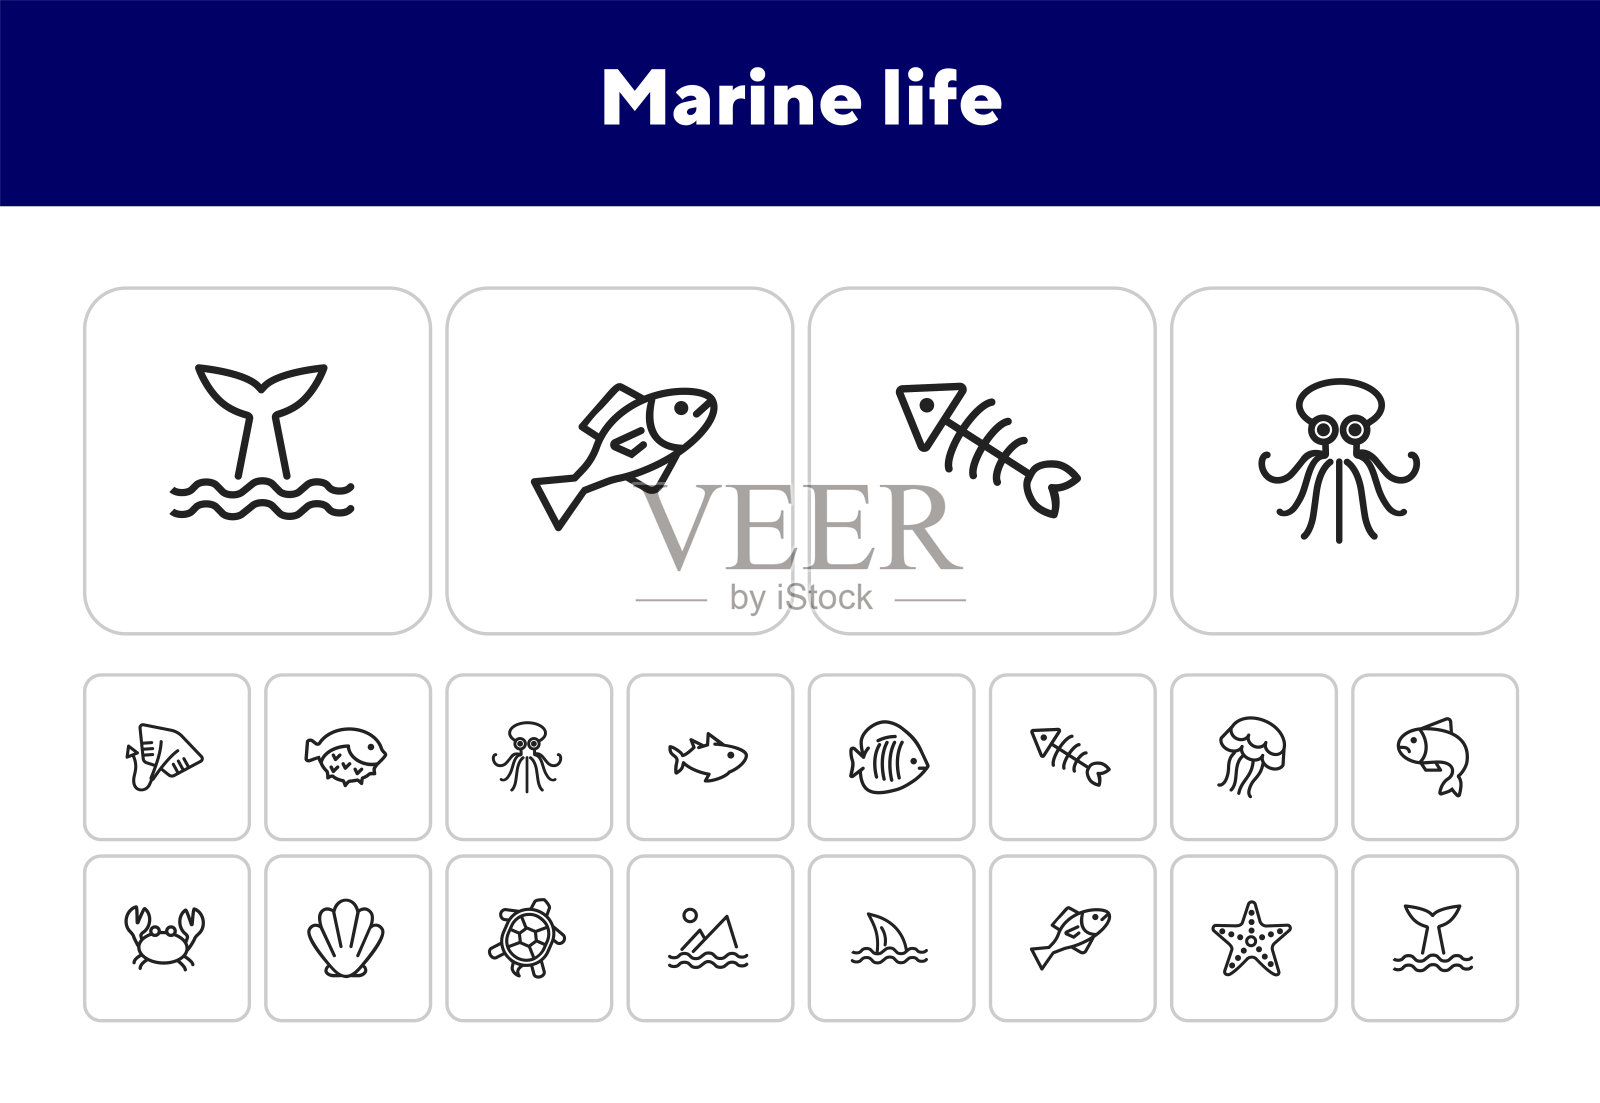 海洋生物的图标图标素材